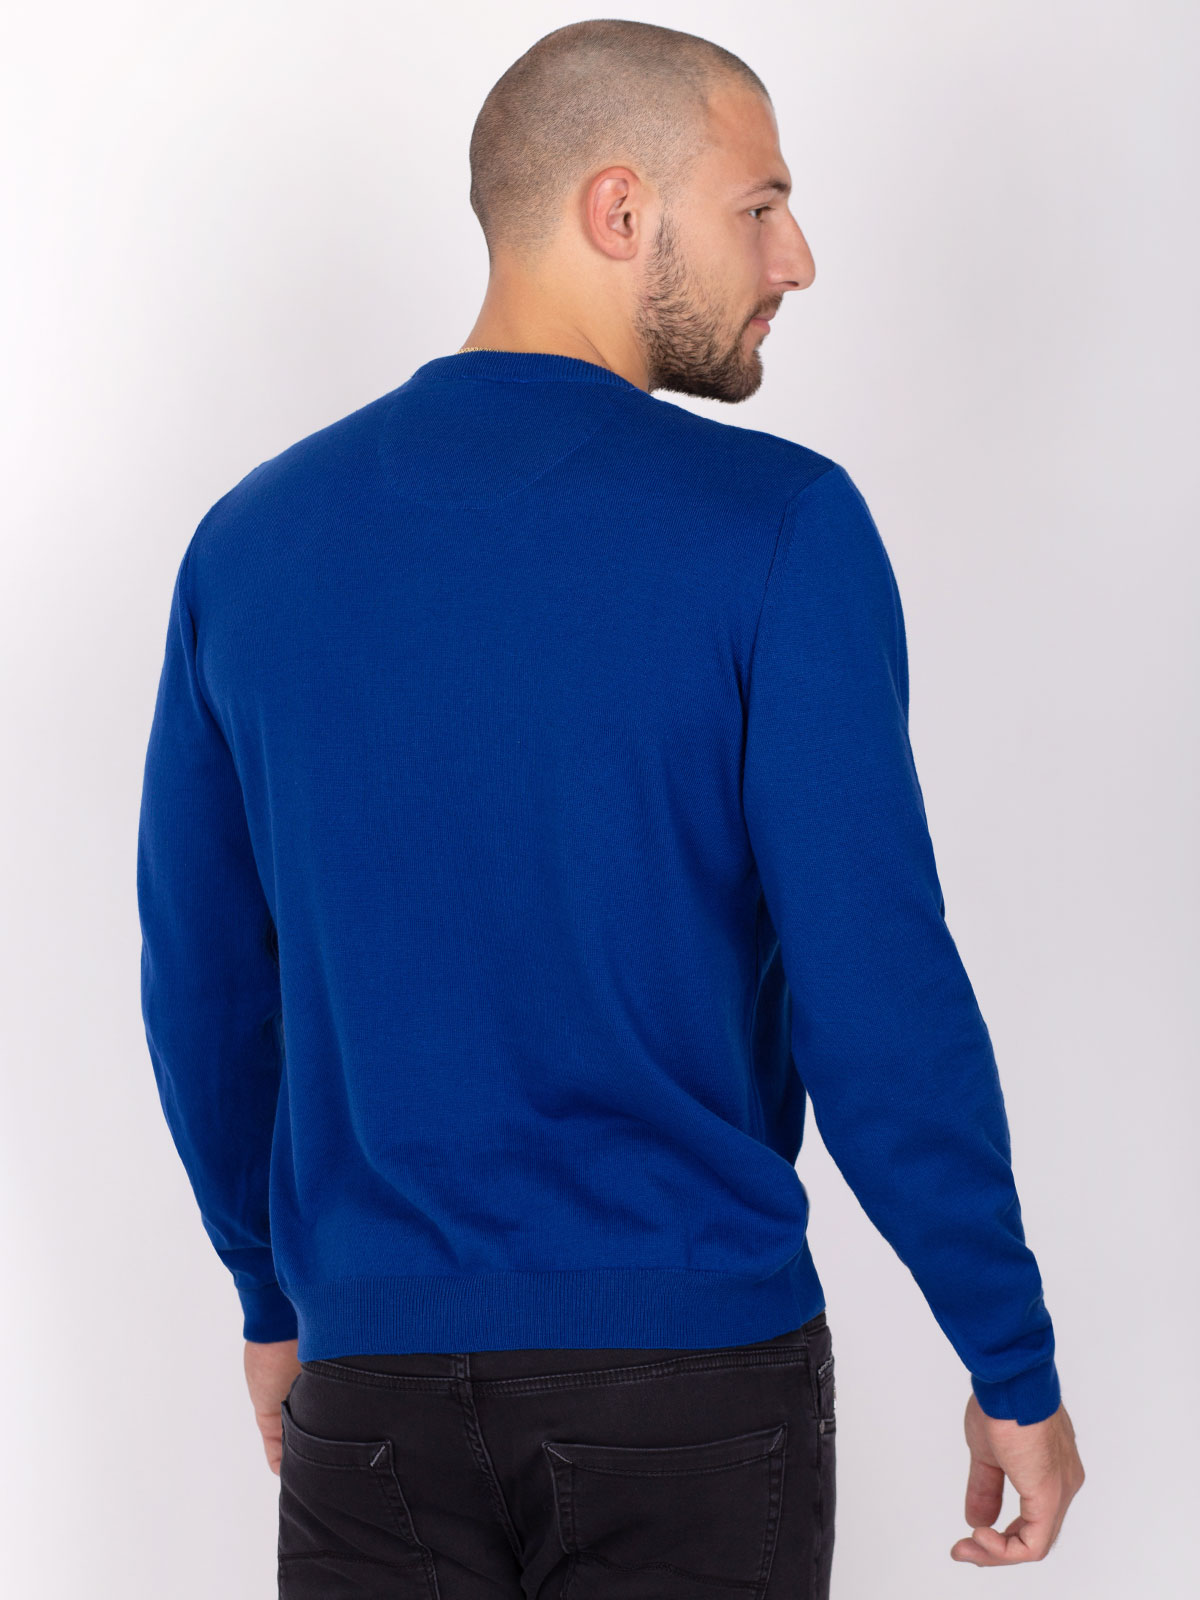 Пуловер в цвят син парламент - 35300 39.00 лв img3